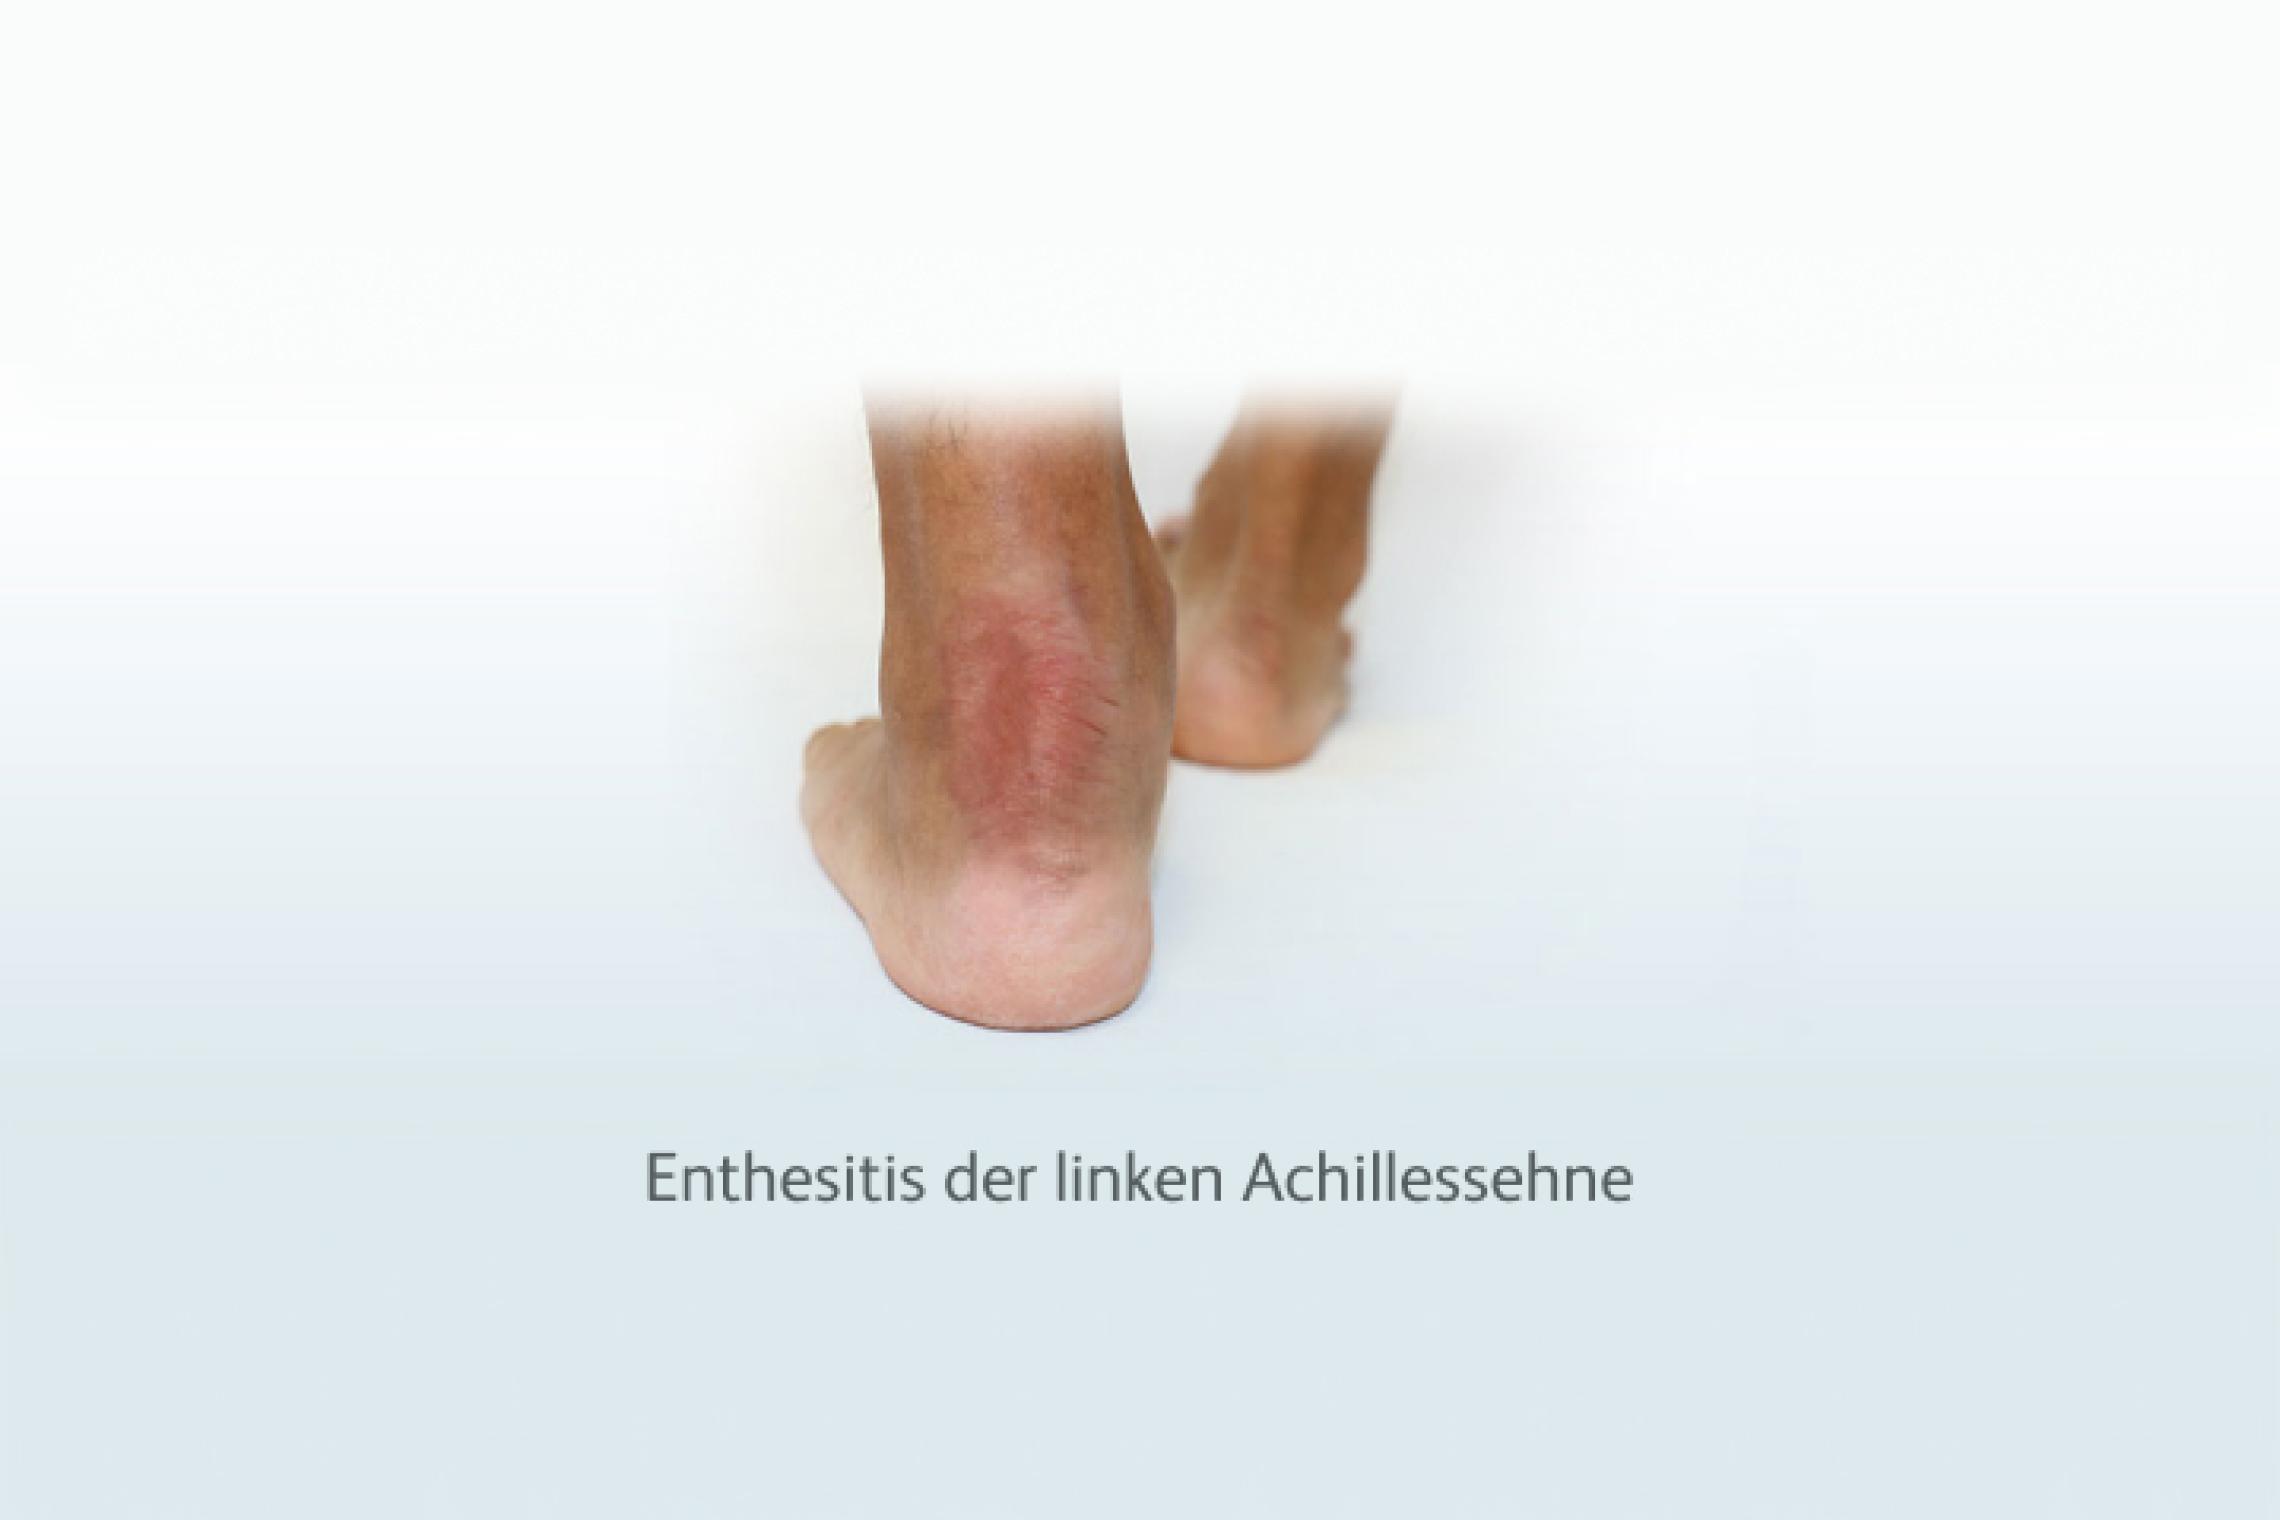 Enthesitis der linken Achillessehne